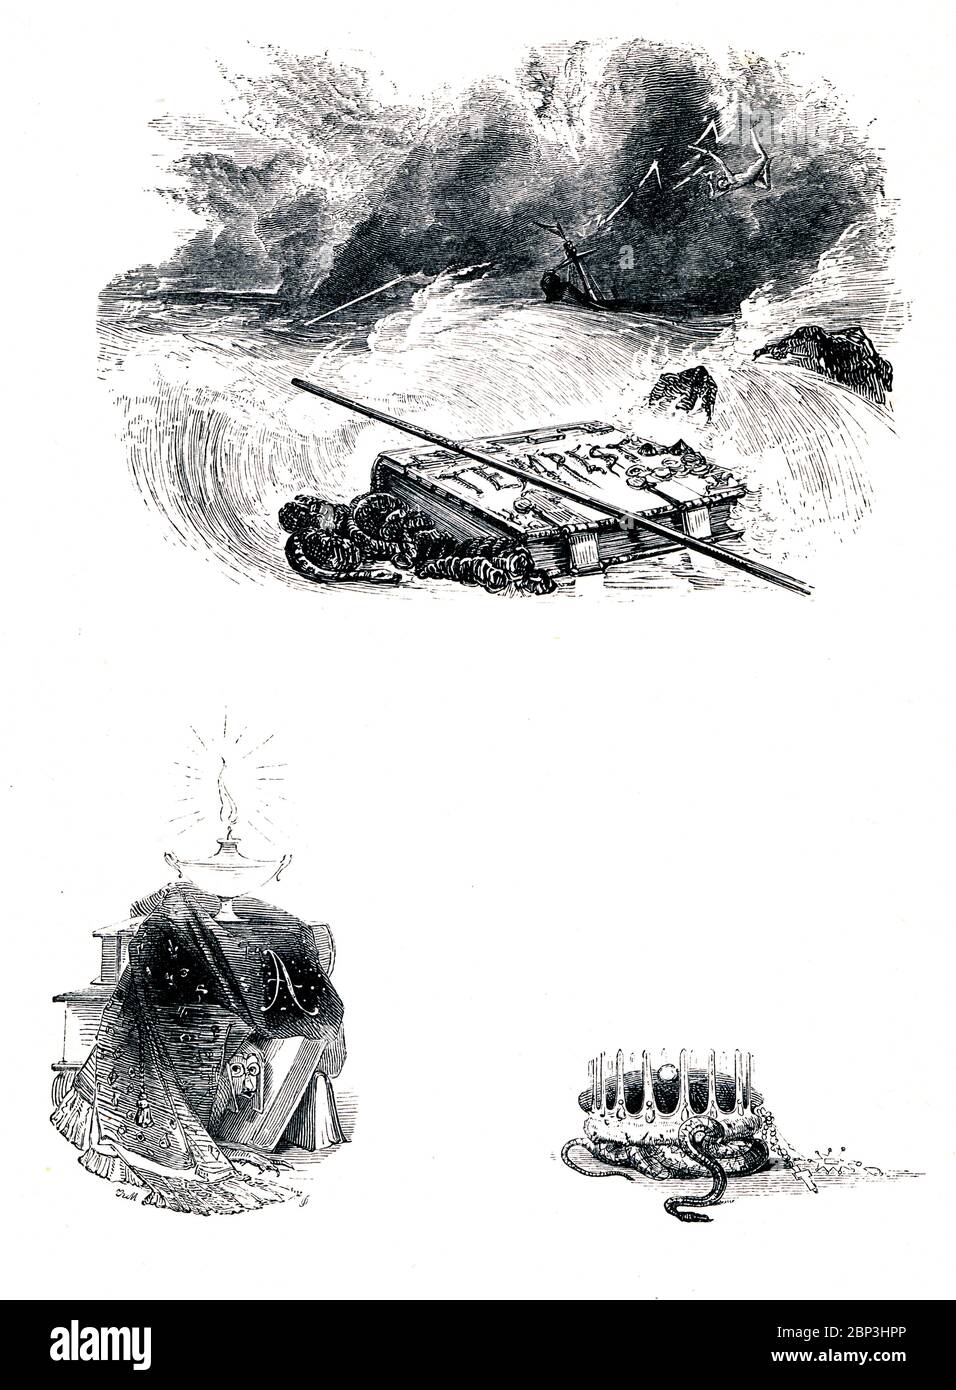 El libro victoriano Tempest frontispiece para la comedia de William Shakespeare sobre un naufragio en una isla misteriosa, del libro ilustrado Heroines of Shakespeare de 1849 Foto de stock